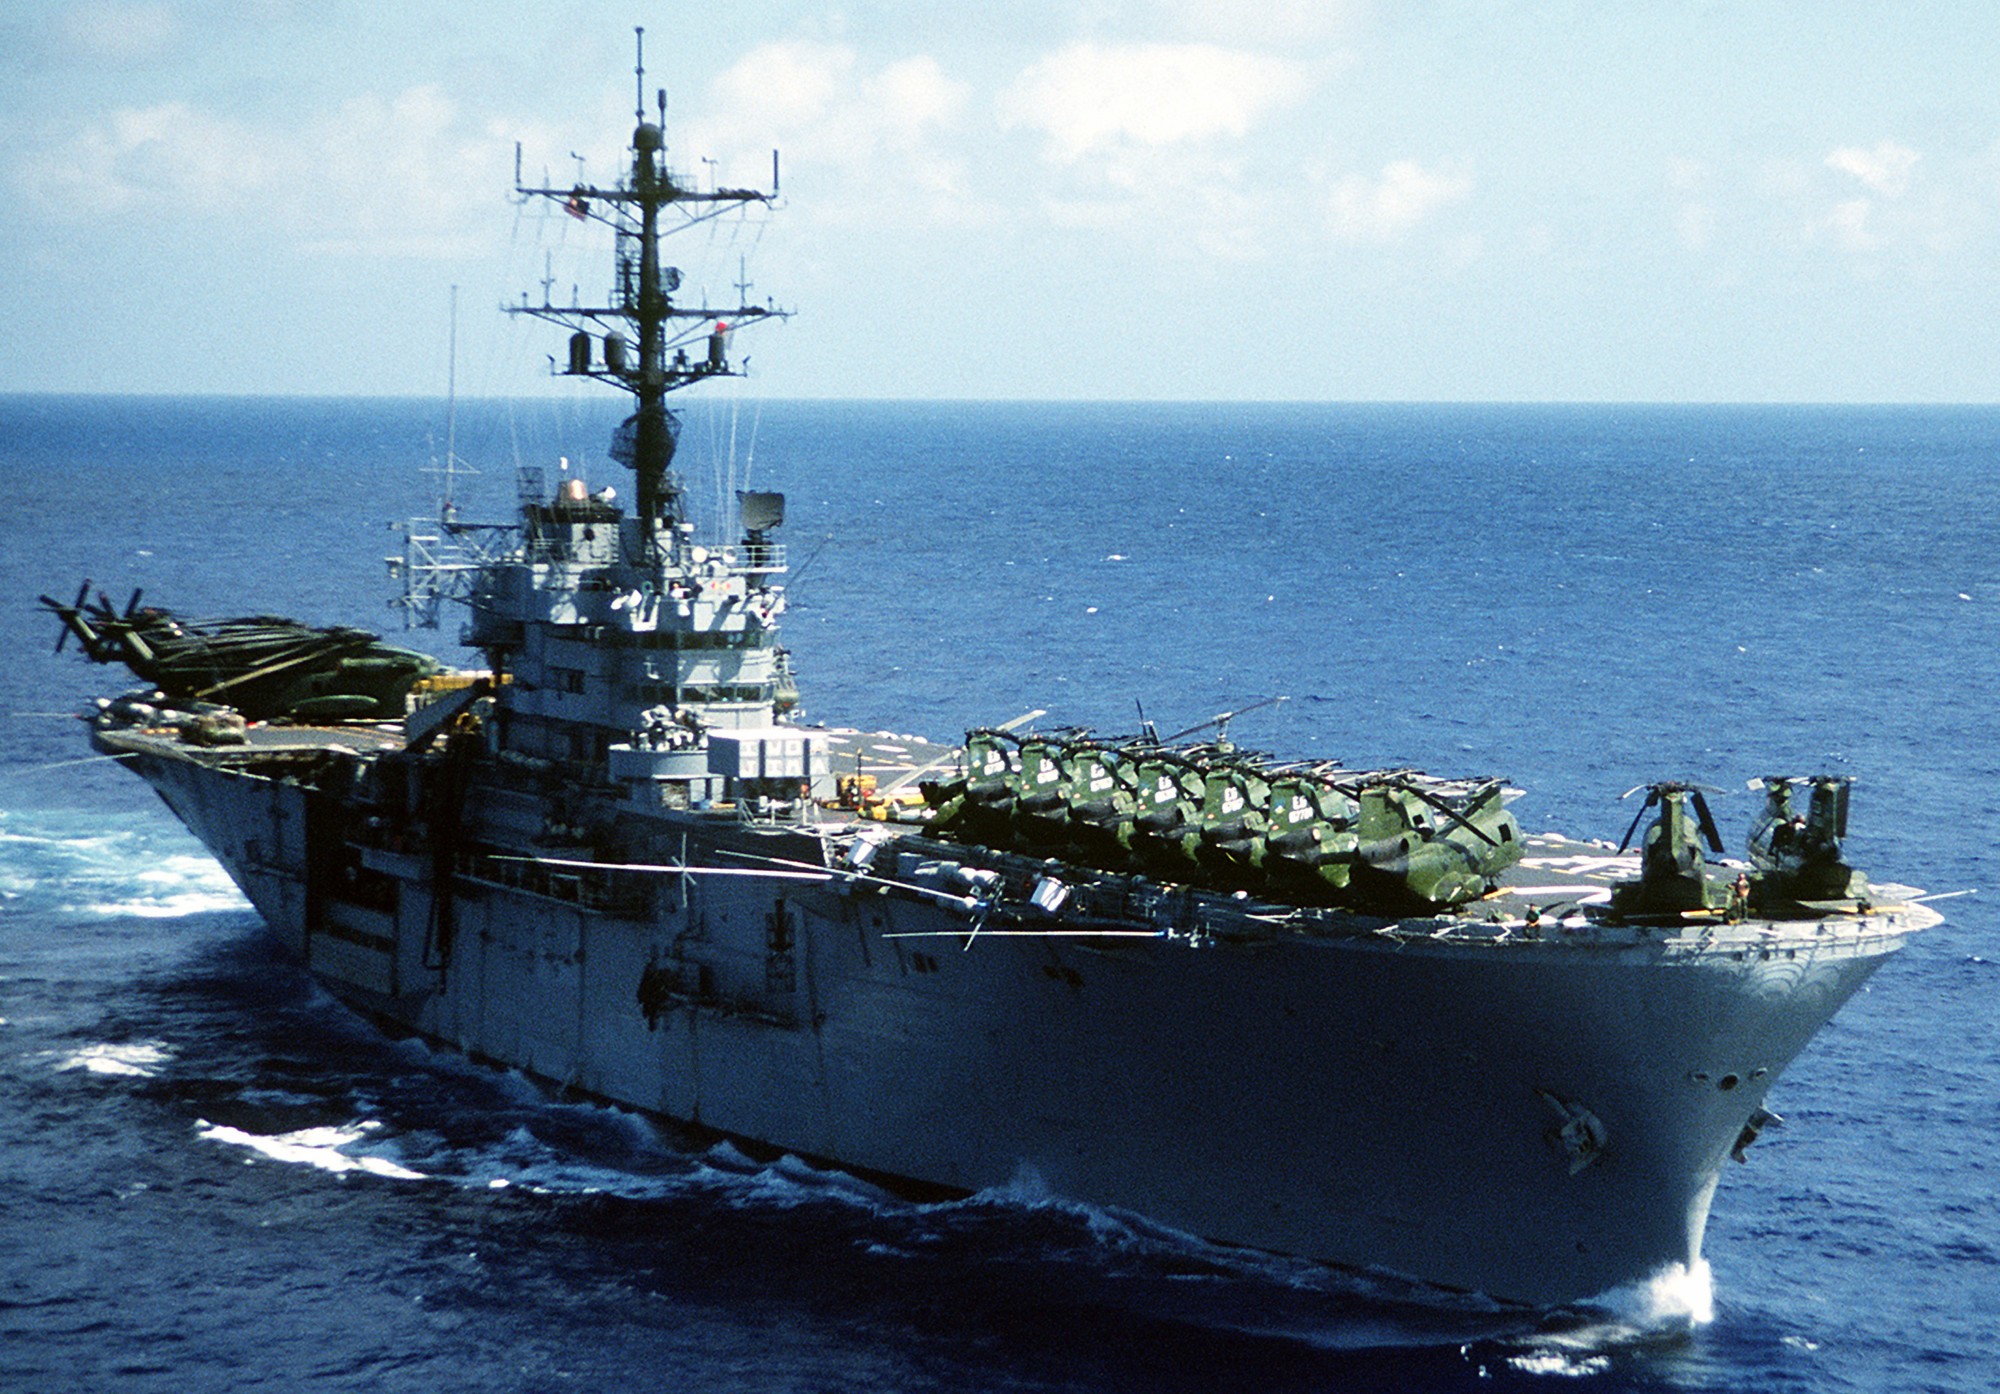 lph-2 uss iwo jima class amphibious assault ship landing platform helicopter us navy 18